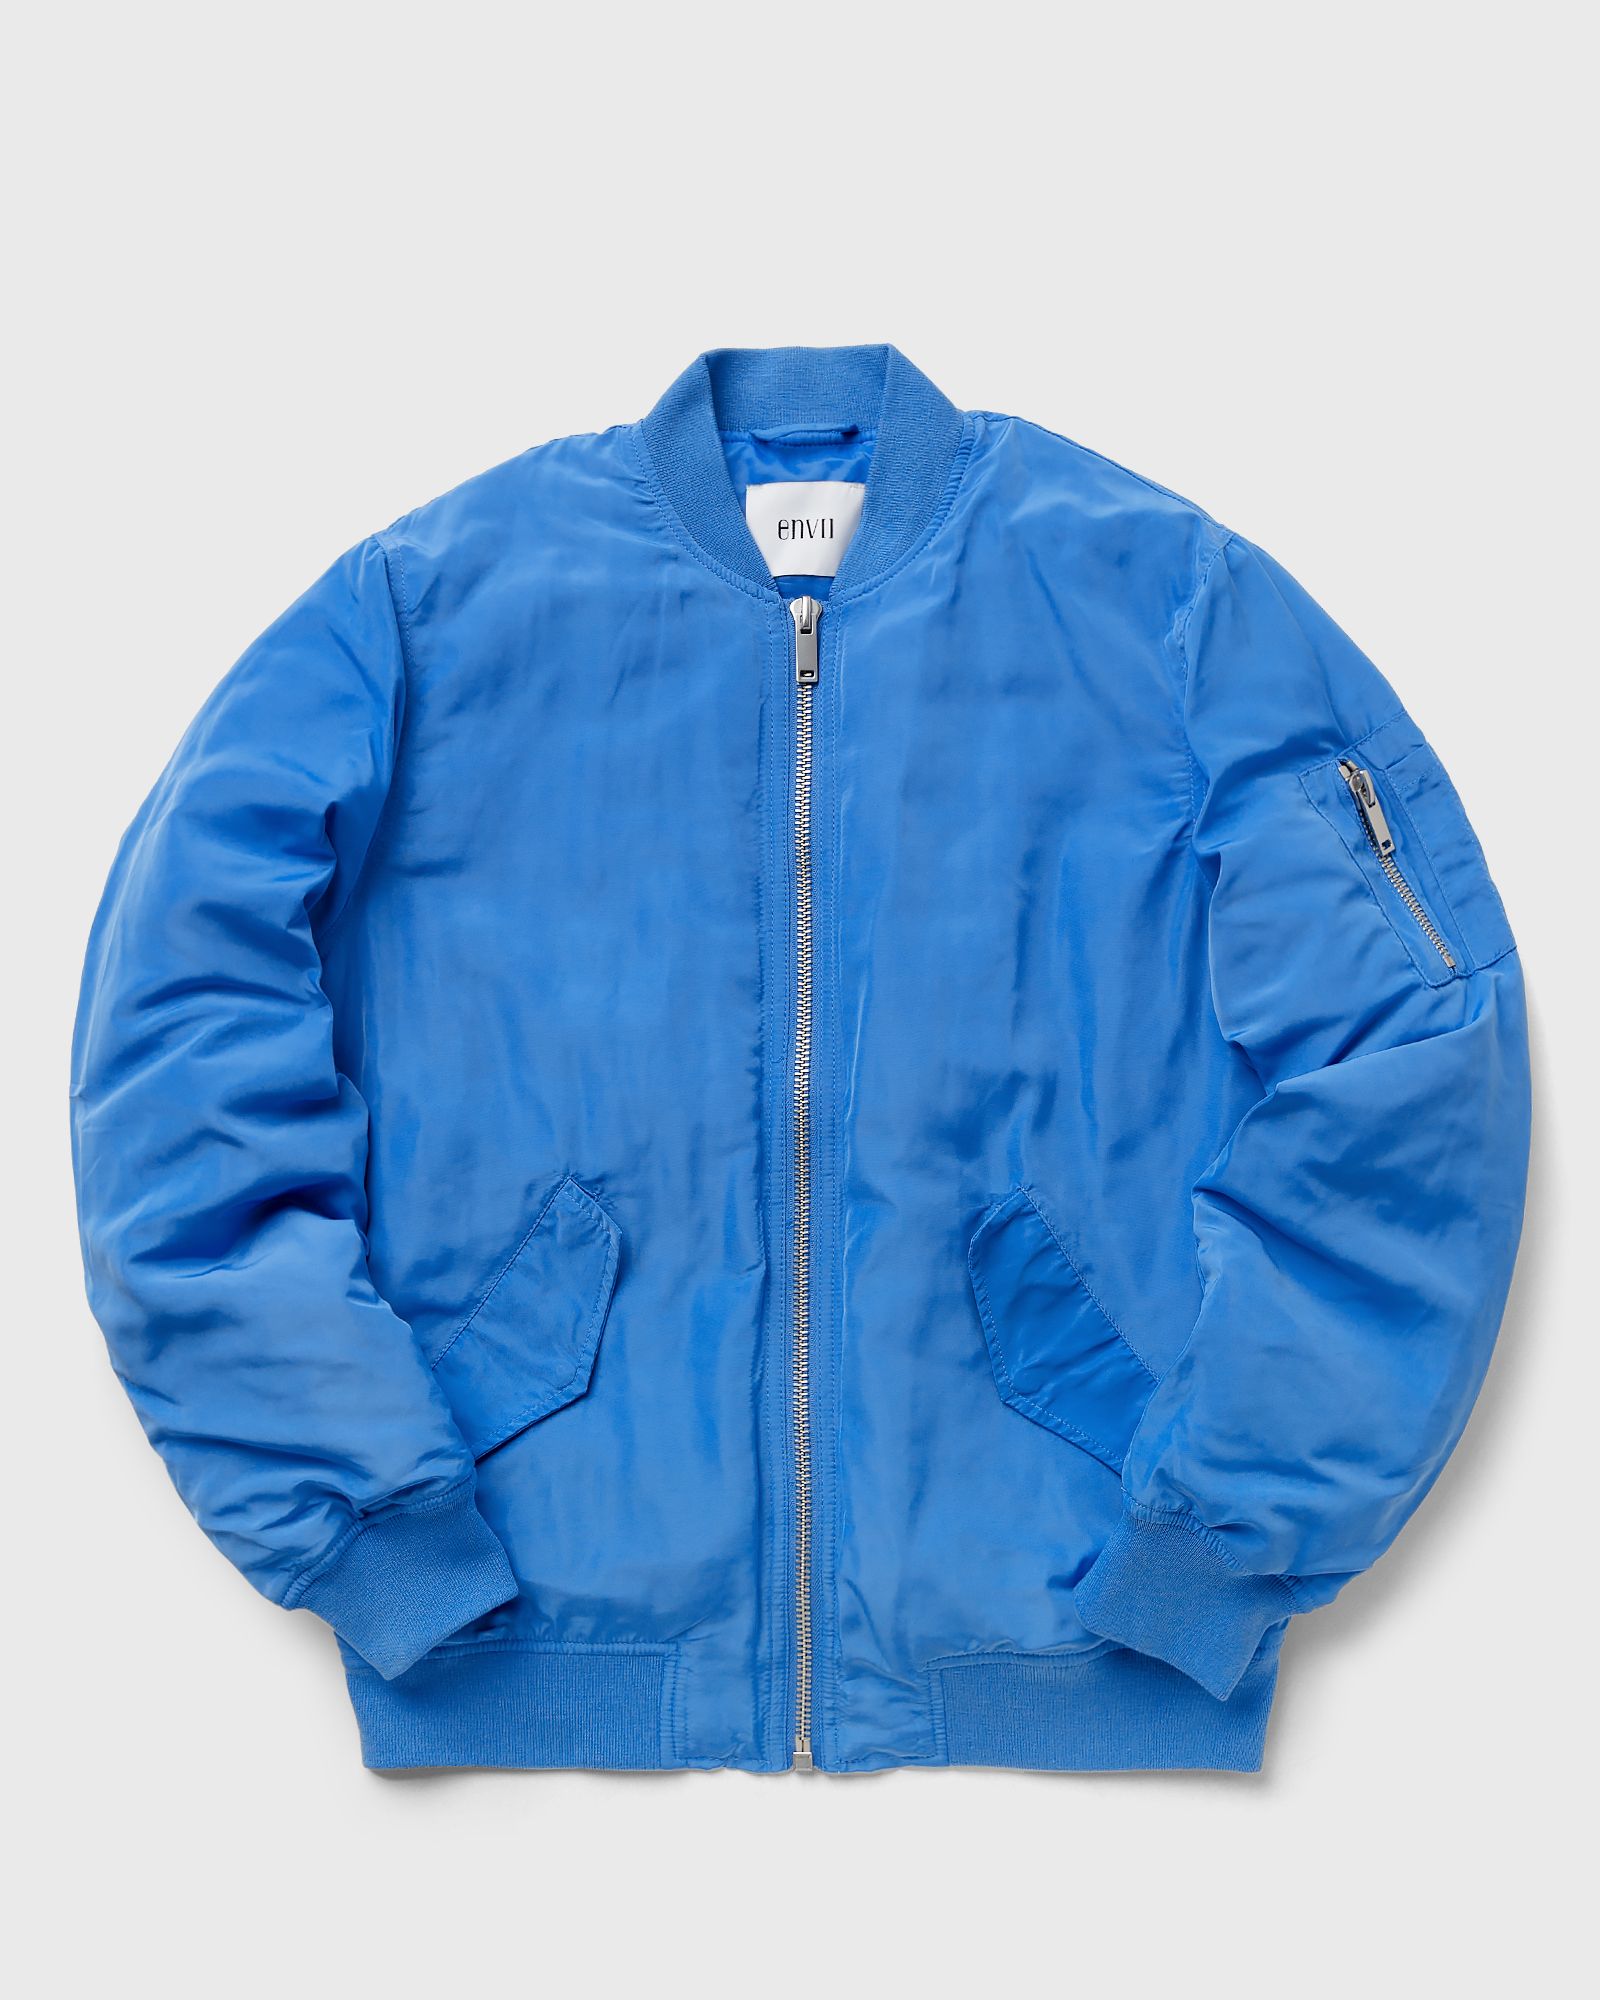 Envii - enjuicy jacket 7015 women bomber jackets blue in größe:m